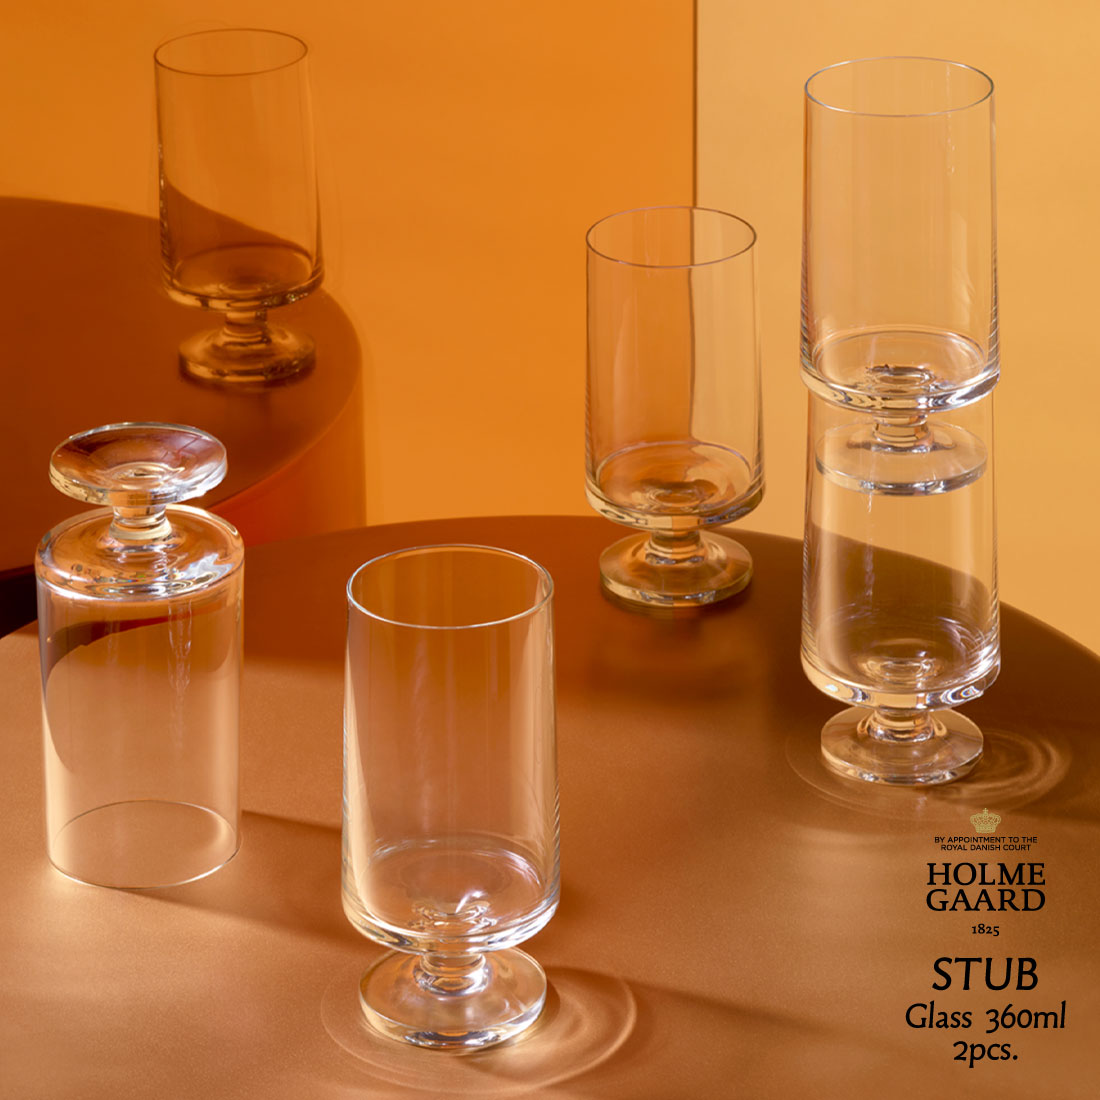 グラス HOLMEGAARD ホルムガード STUB 360ml 2個入り glass GRATHE MEYER ＆ IBI TRIER MORCHスタブ グラス 2個入り グレーテ・マイヤー ＆ イビ・トリア・モーク北欧 デンマーク